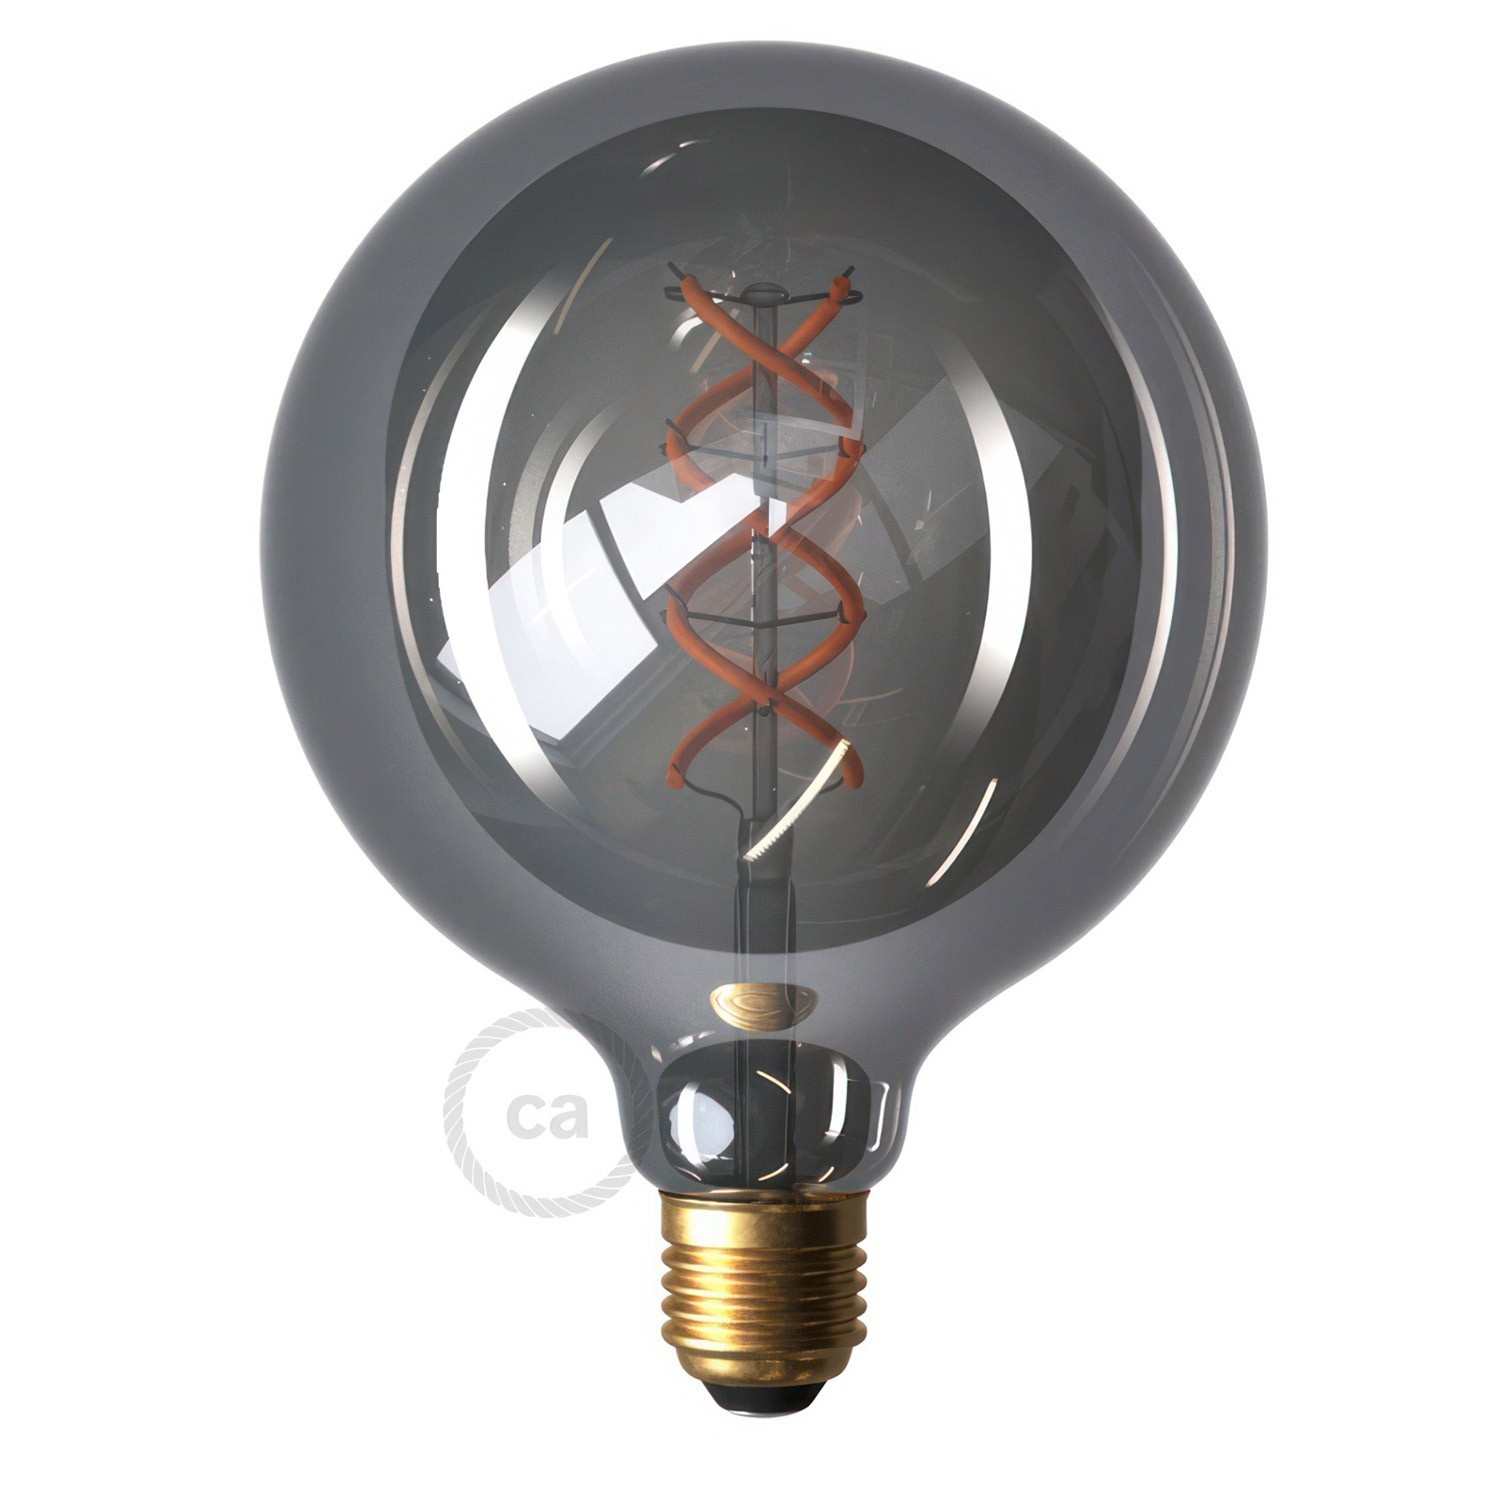 SnakeBis Cord - Plug-in lampe med jute snoet kabel